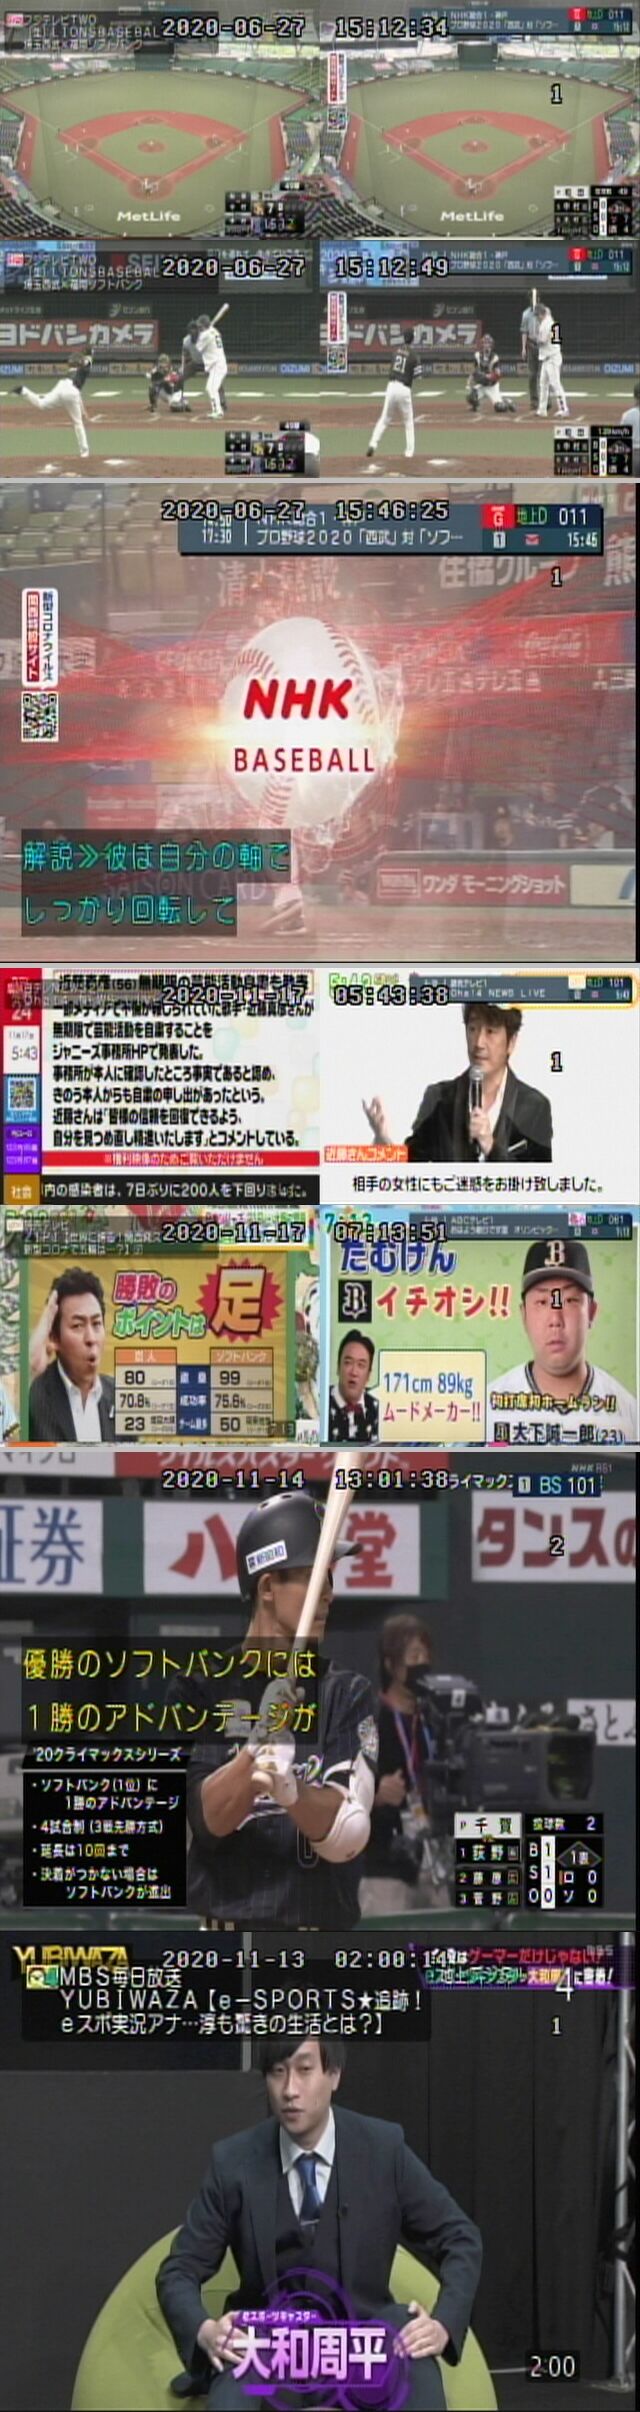 プロ野球テレビ ラジオ中継11月17日 火 新 プロ野球 中継事情 Yahoo ブログ